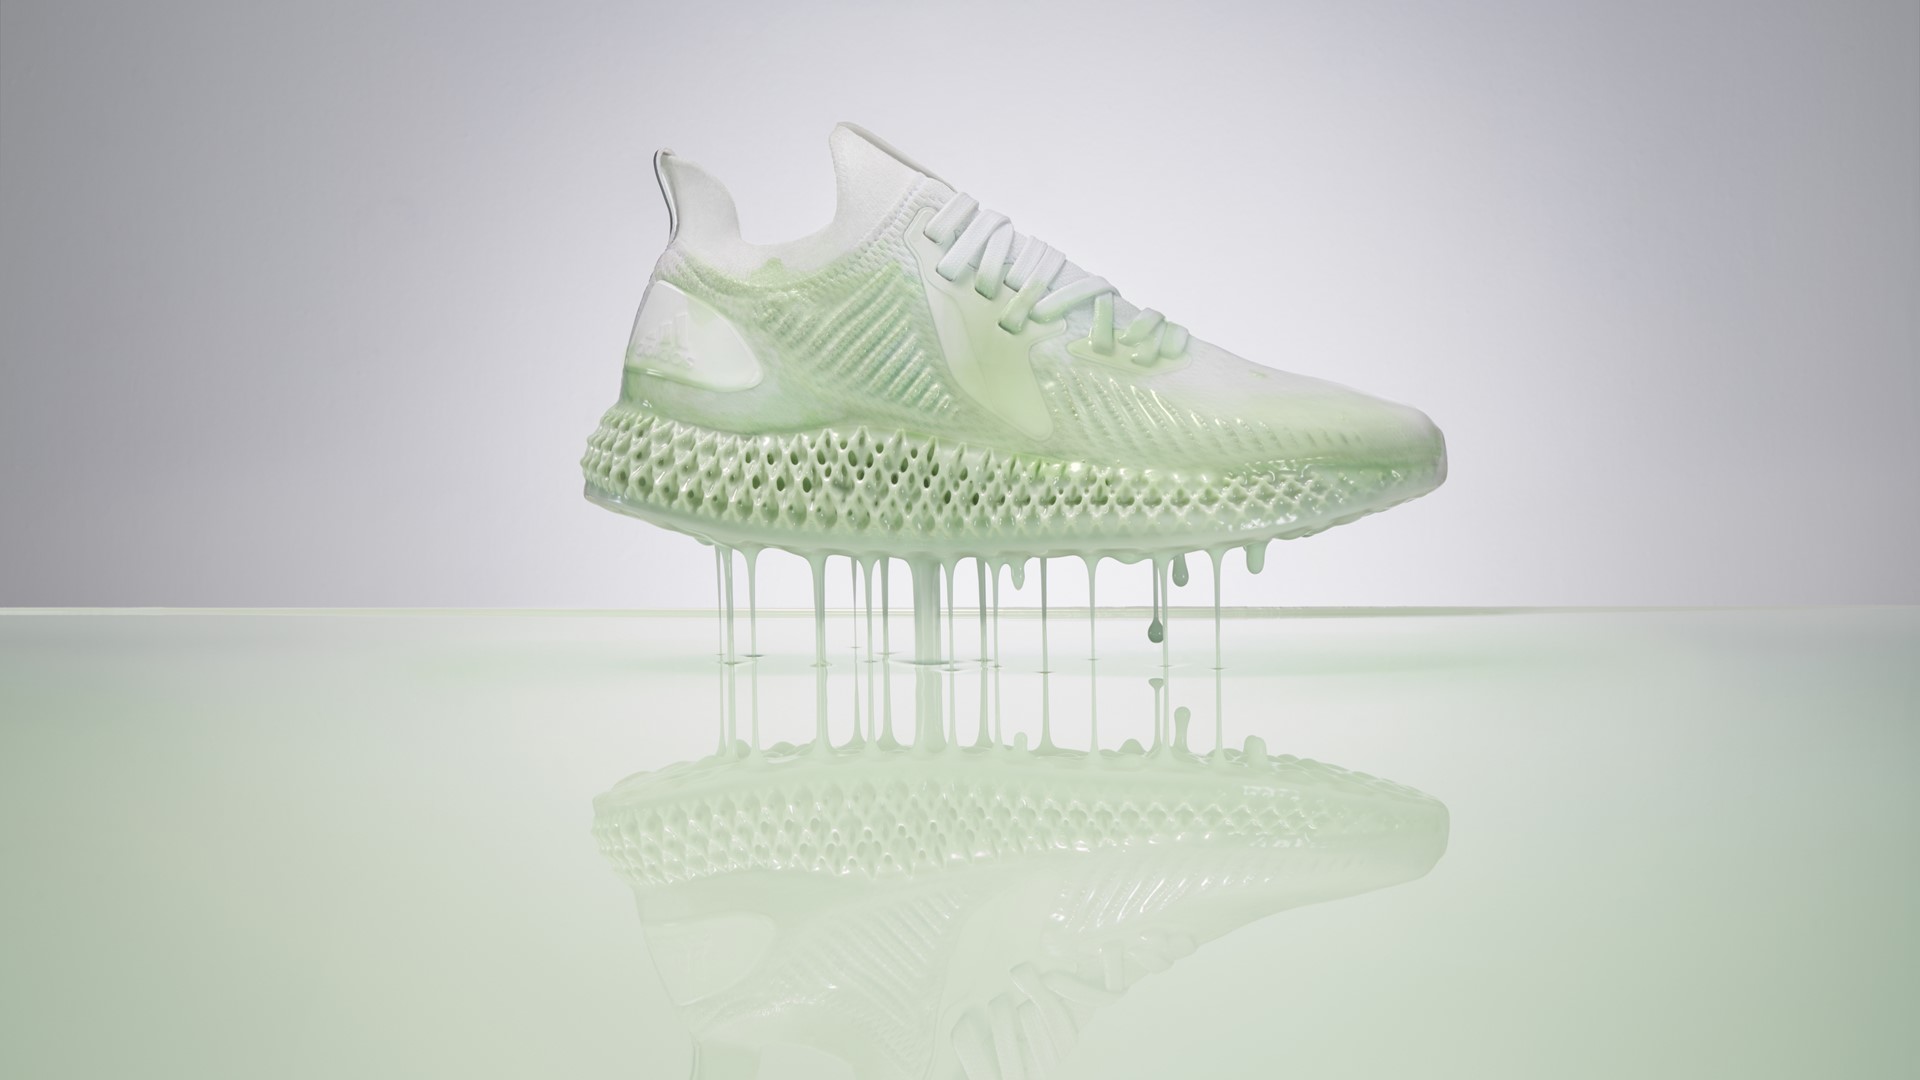 Engaño Fuerza motriz Ministerio Adidas hace realidad el calzado impreso en 3D - Thred Website